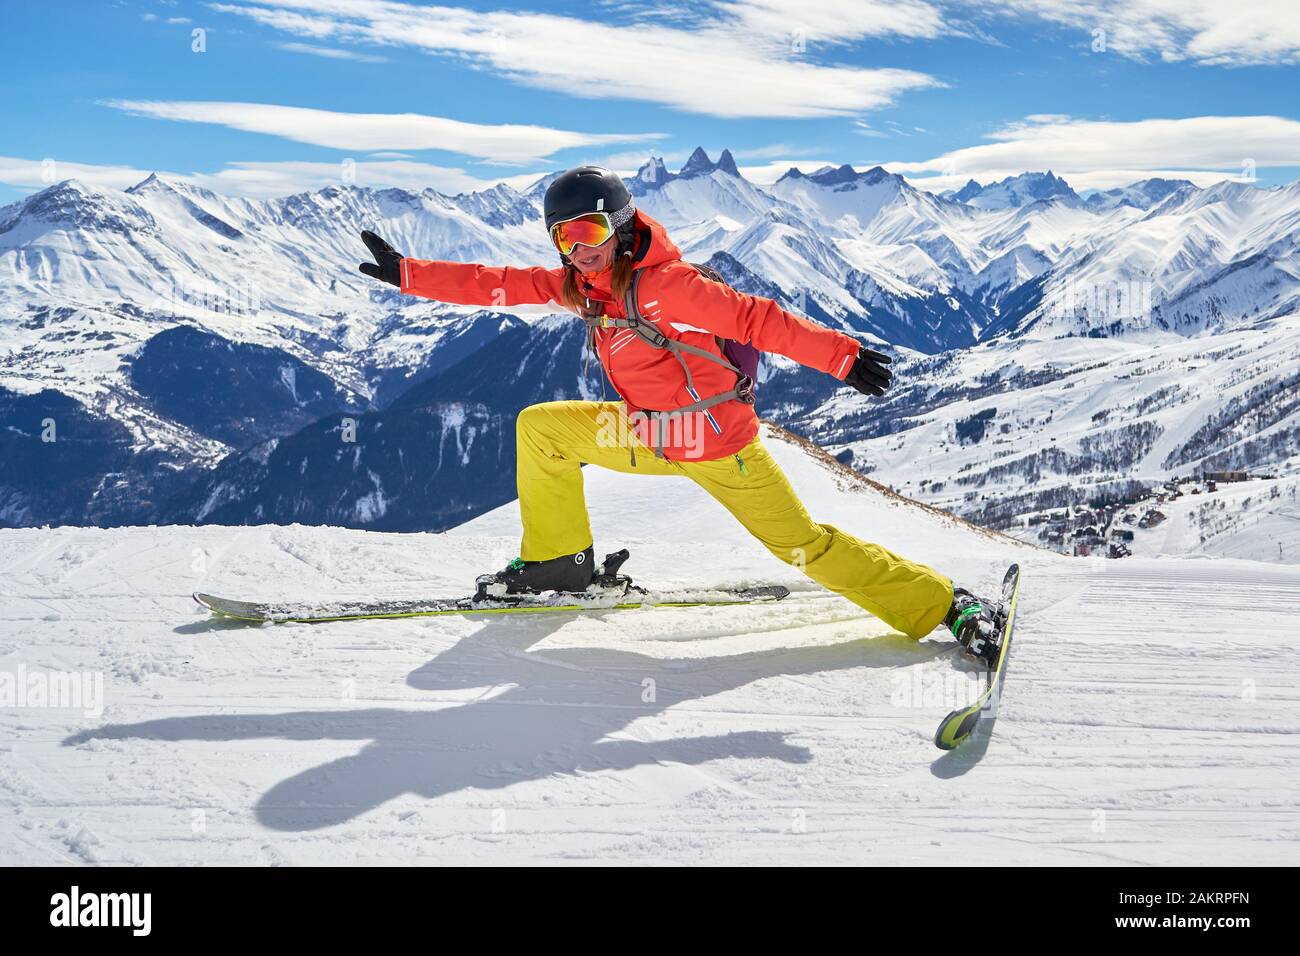 Femme skieur s'étendant sur les skis avec une pose drôle, haut au-dessus sur une piste de ski dans le domaine skiable des Sybelles, France, sur une journée d'hiver ensoleillée, avec les Aigeuil Banque D'Images